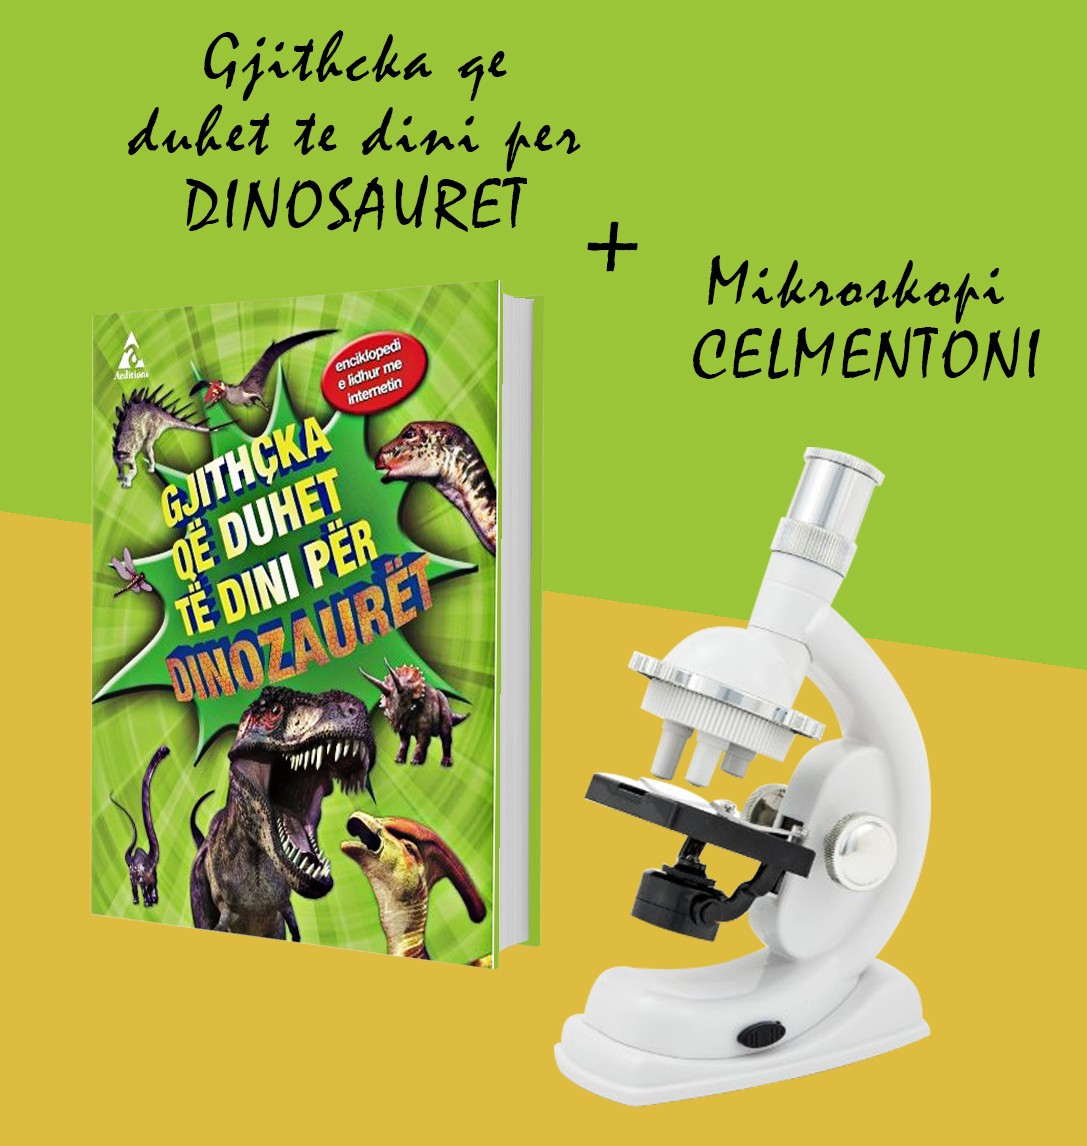 Set Mikroskopi Clementoni + Libri “Gjithcka qe duhet te dini mbi dinozauret”